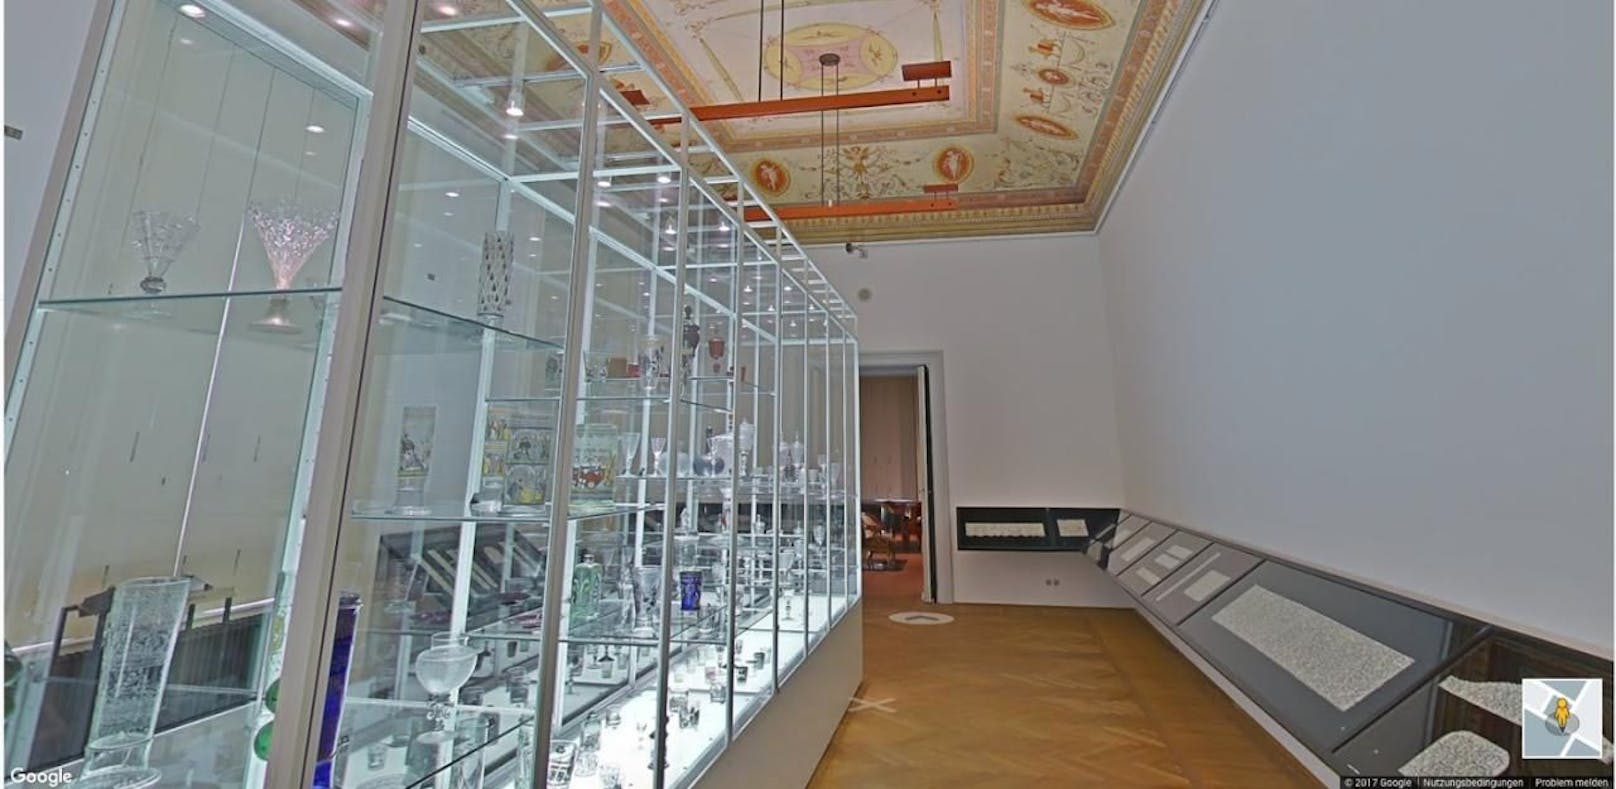 Virtueller Rundgang mit Street View Technologie durch das Museum